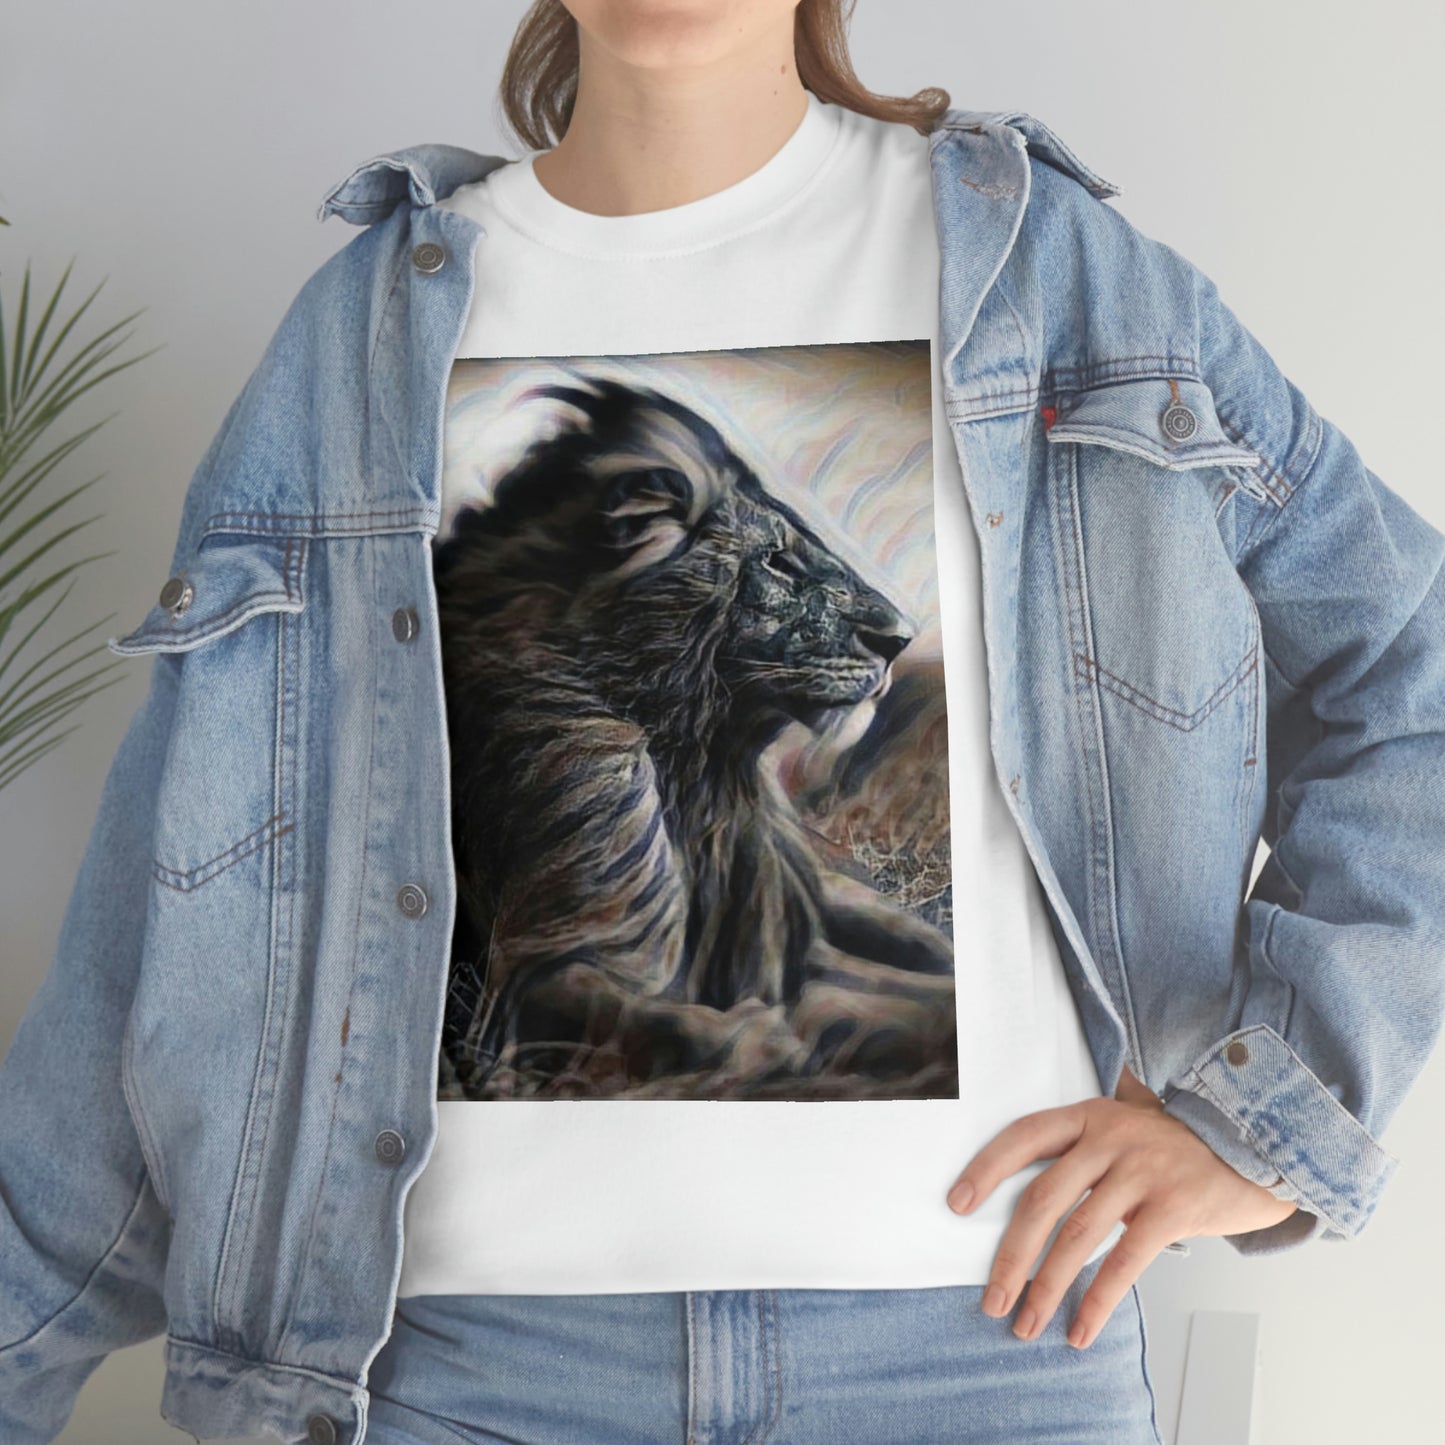 T-shirt - Lion Portrait, Lion - Just Try Me, Lion Face T-shirt, Lion Face T-shirt, Wild African Life, Animal Lover, Animal Face Shirt, Zoo Shirt, Animal Shirt, Lion Shirt